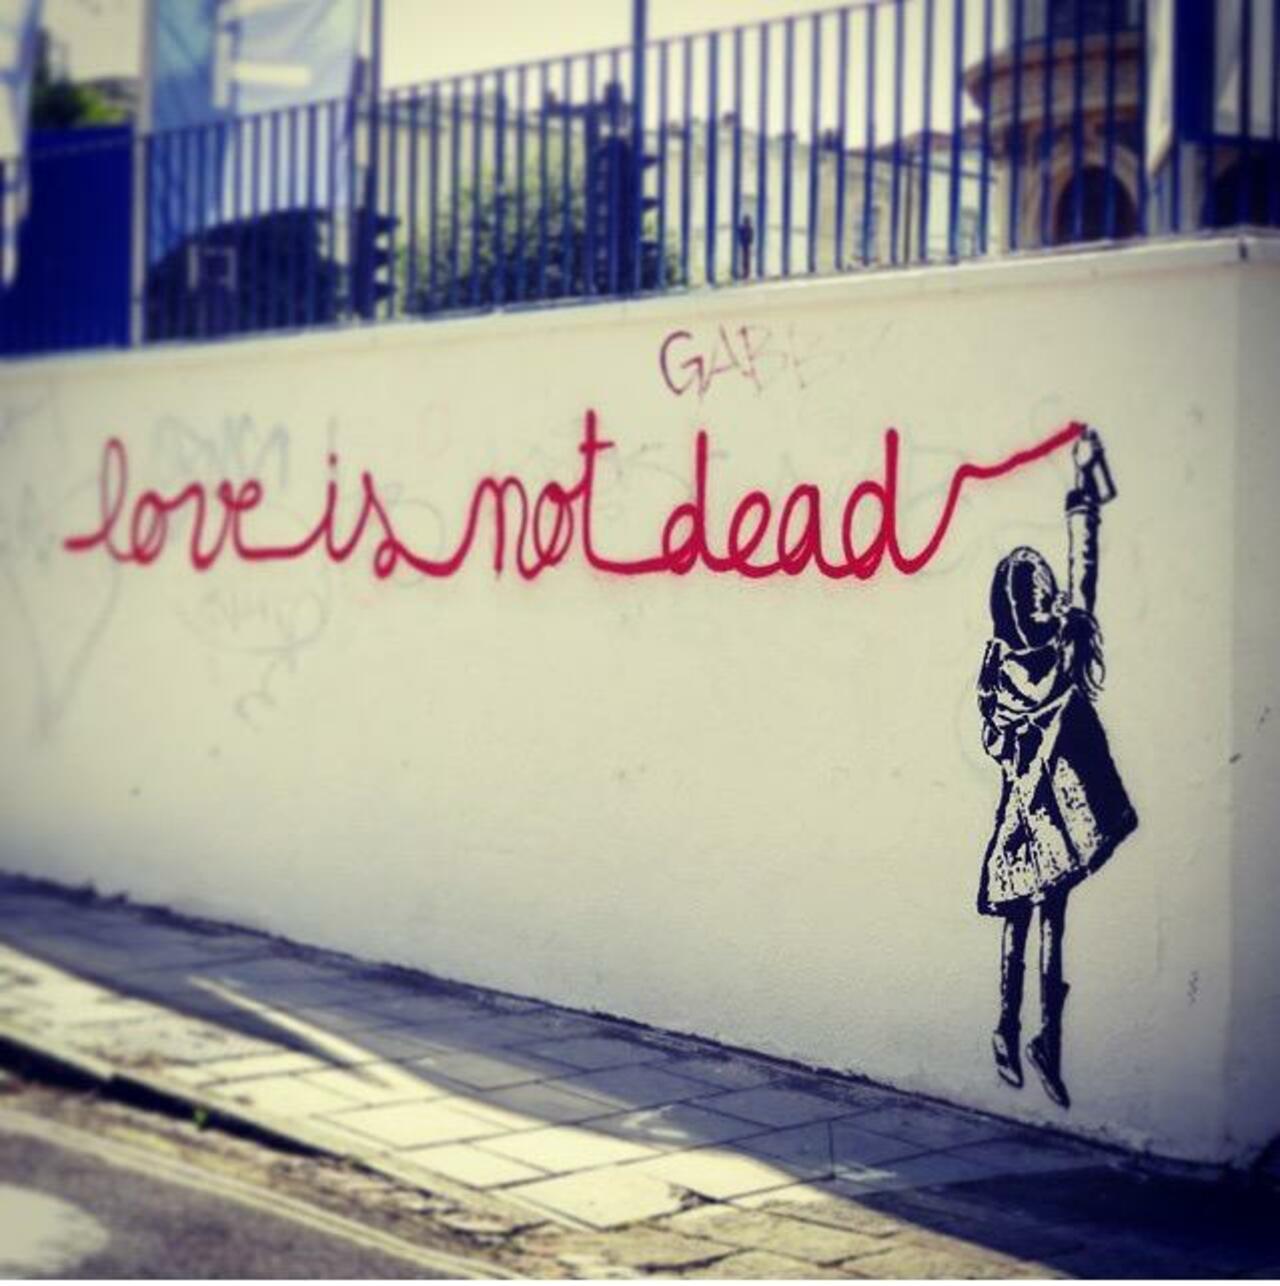 Love is not dead 

Street Art by Goin 
#arte #art #graffiti #streetart http://t.co/oK1EgbRYWd